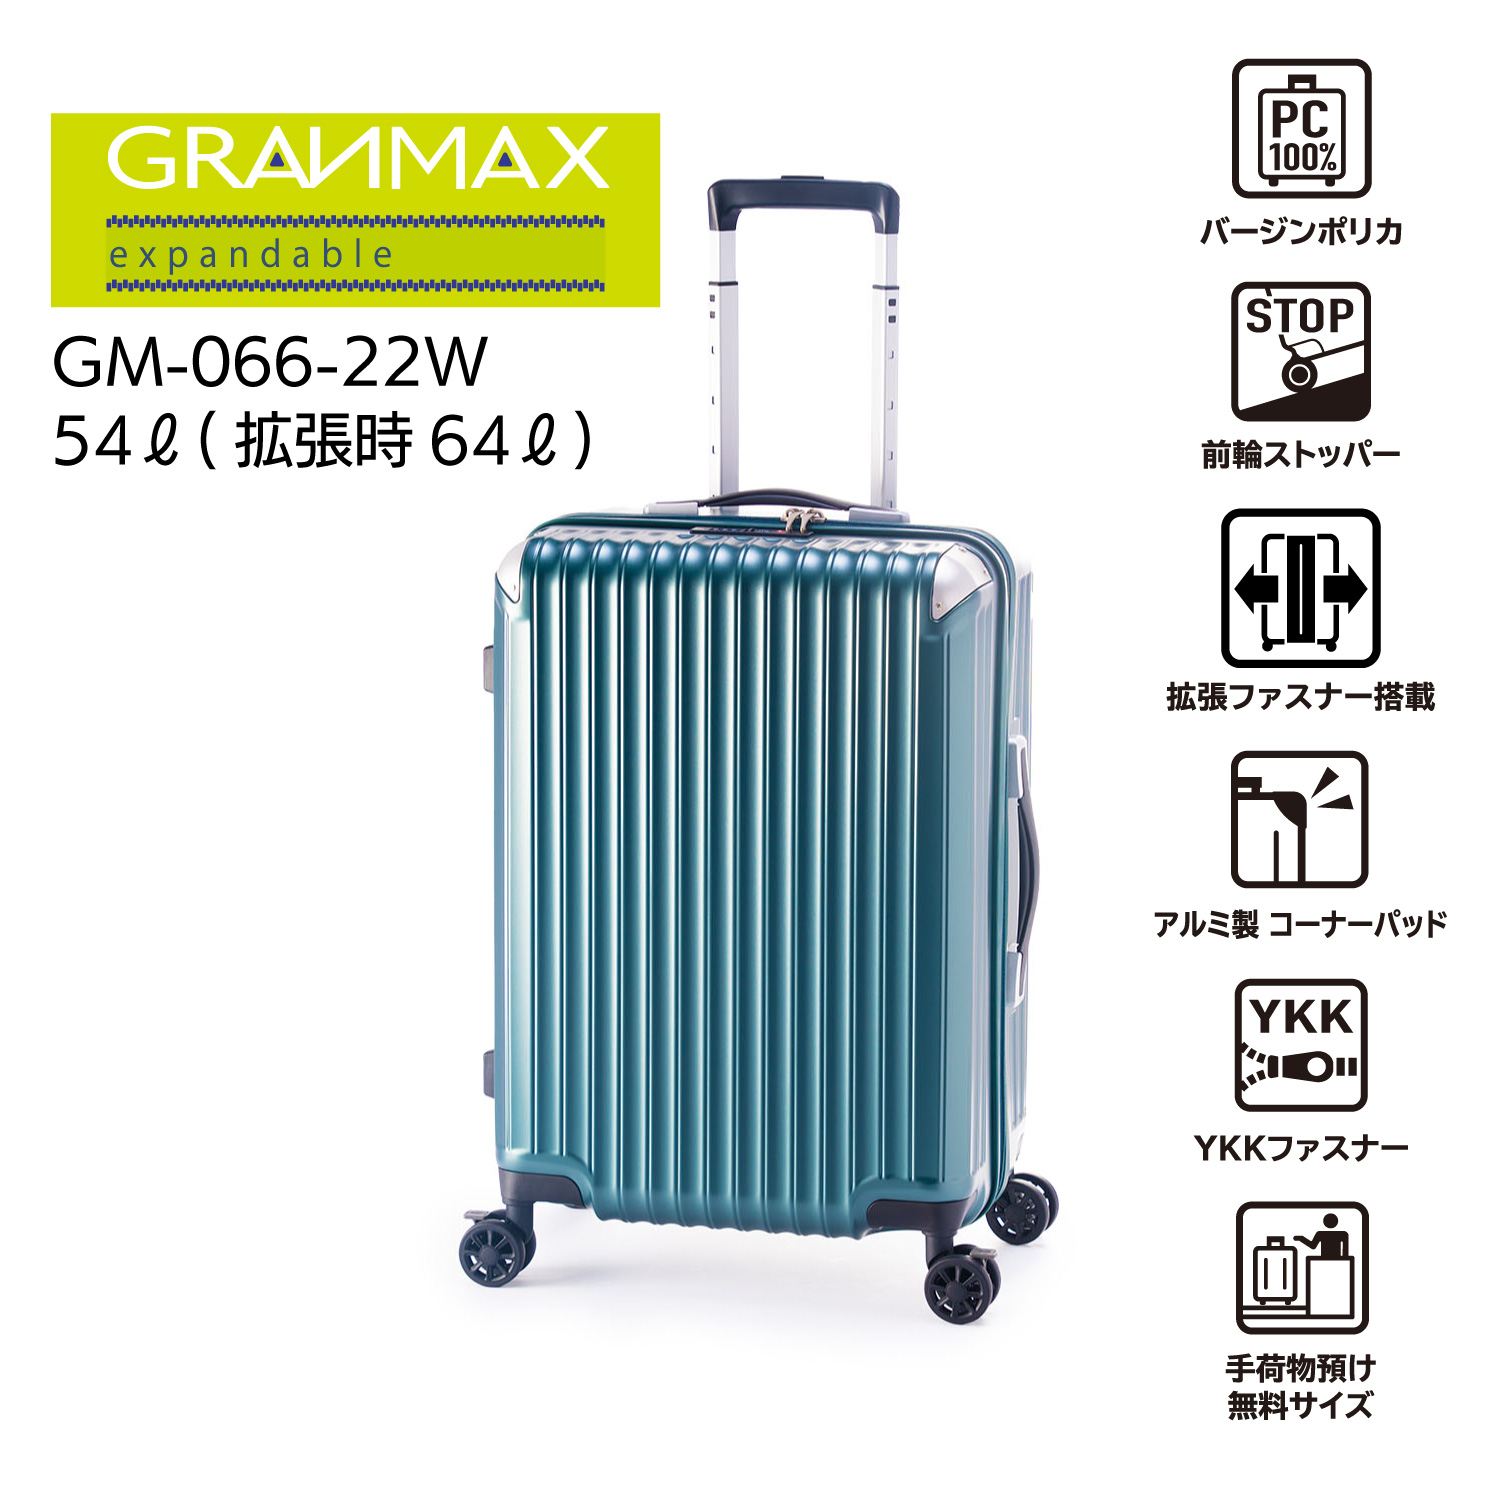 シンプルでスタイリッシュ!大容量の拡張付きファスナータイプ![GRANMAX]GM-066-22W[5〜7泊]54L→64L